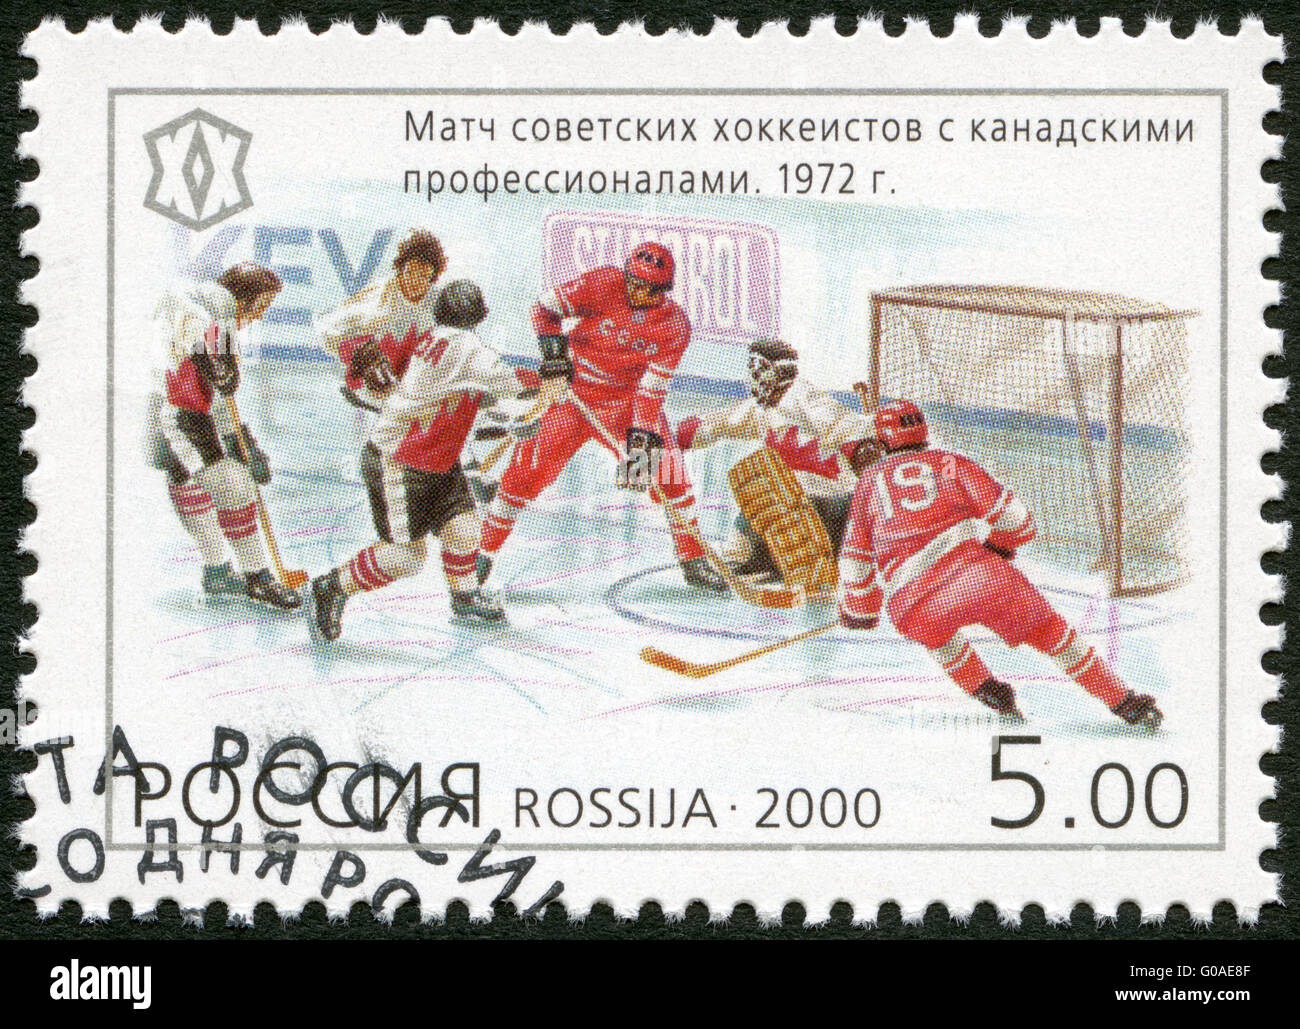 Russland - 2000: zeigt ein Match zwischen dem sowjetischen Hockeyspieler und kanadischen Profis (1972), Serie National Sporting Meilen Stockfoto